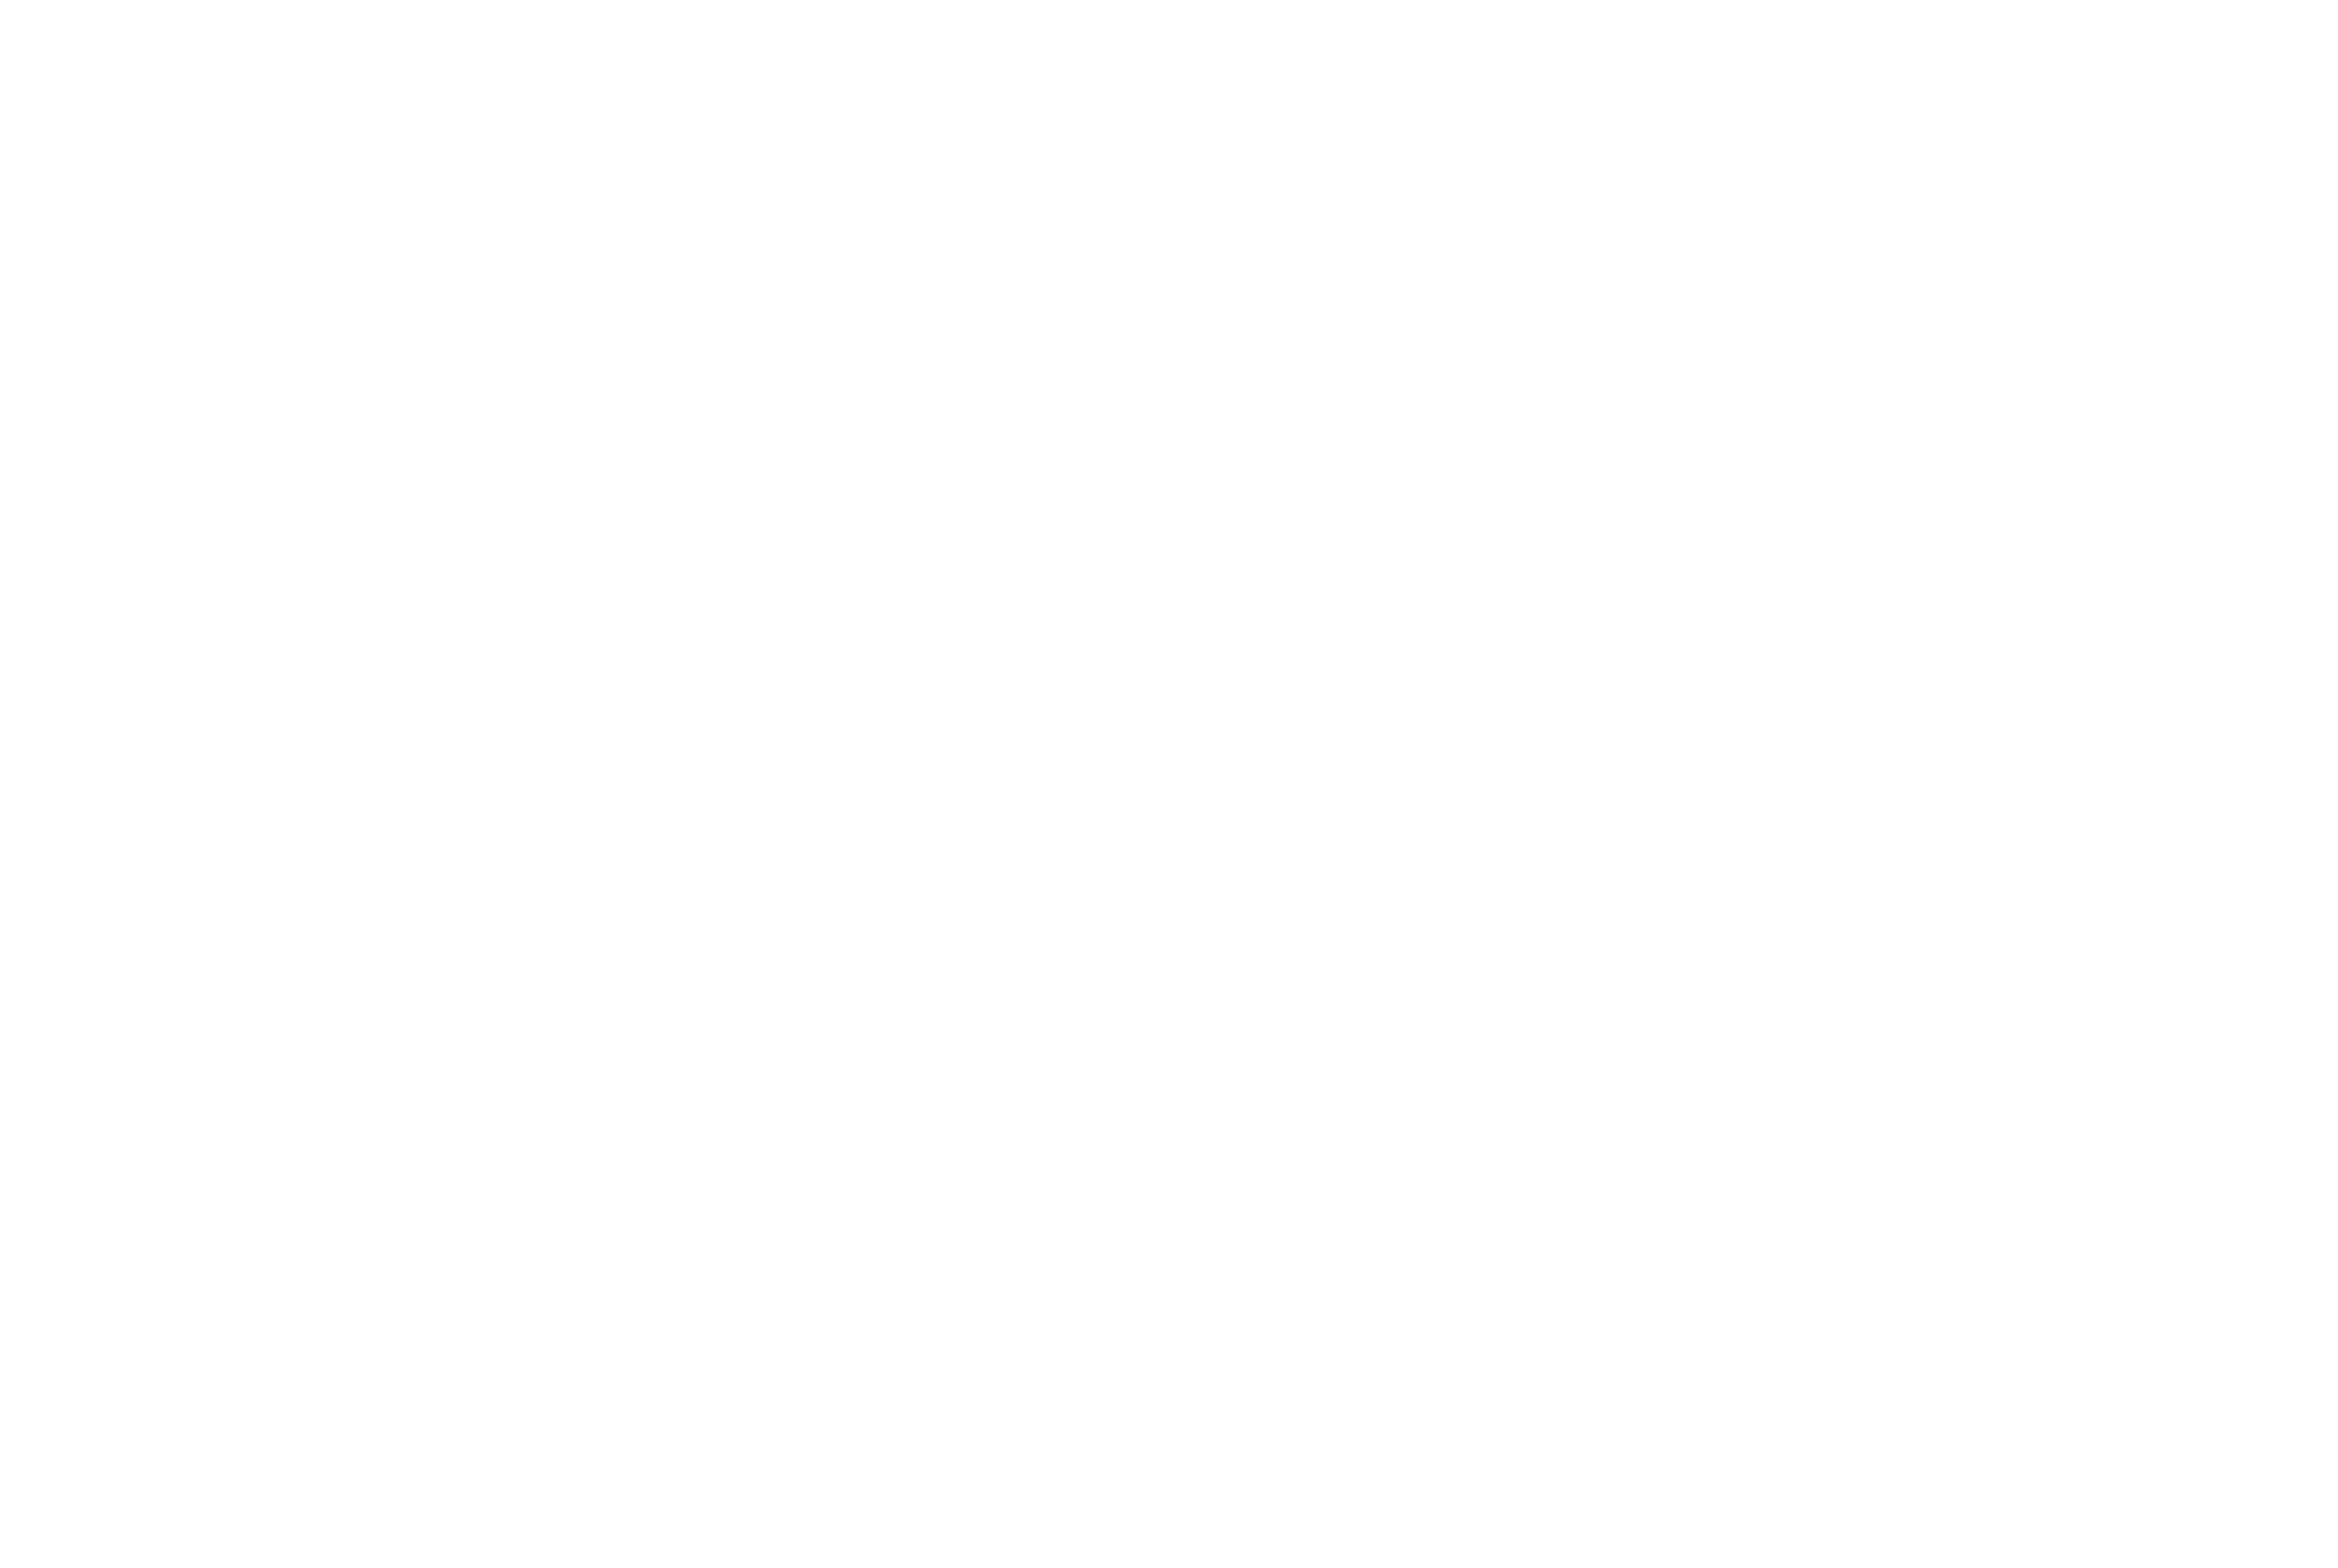 Virginia-travers-signature